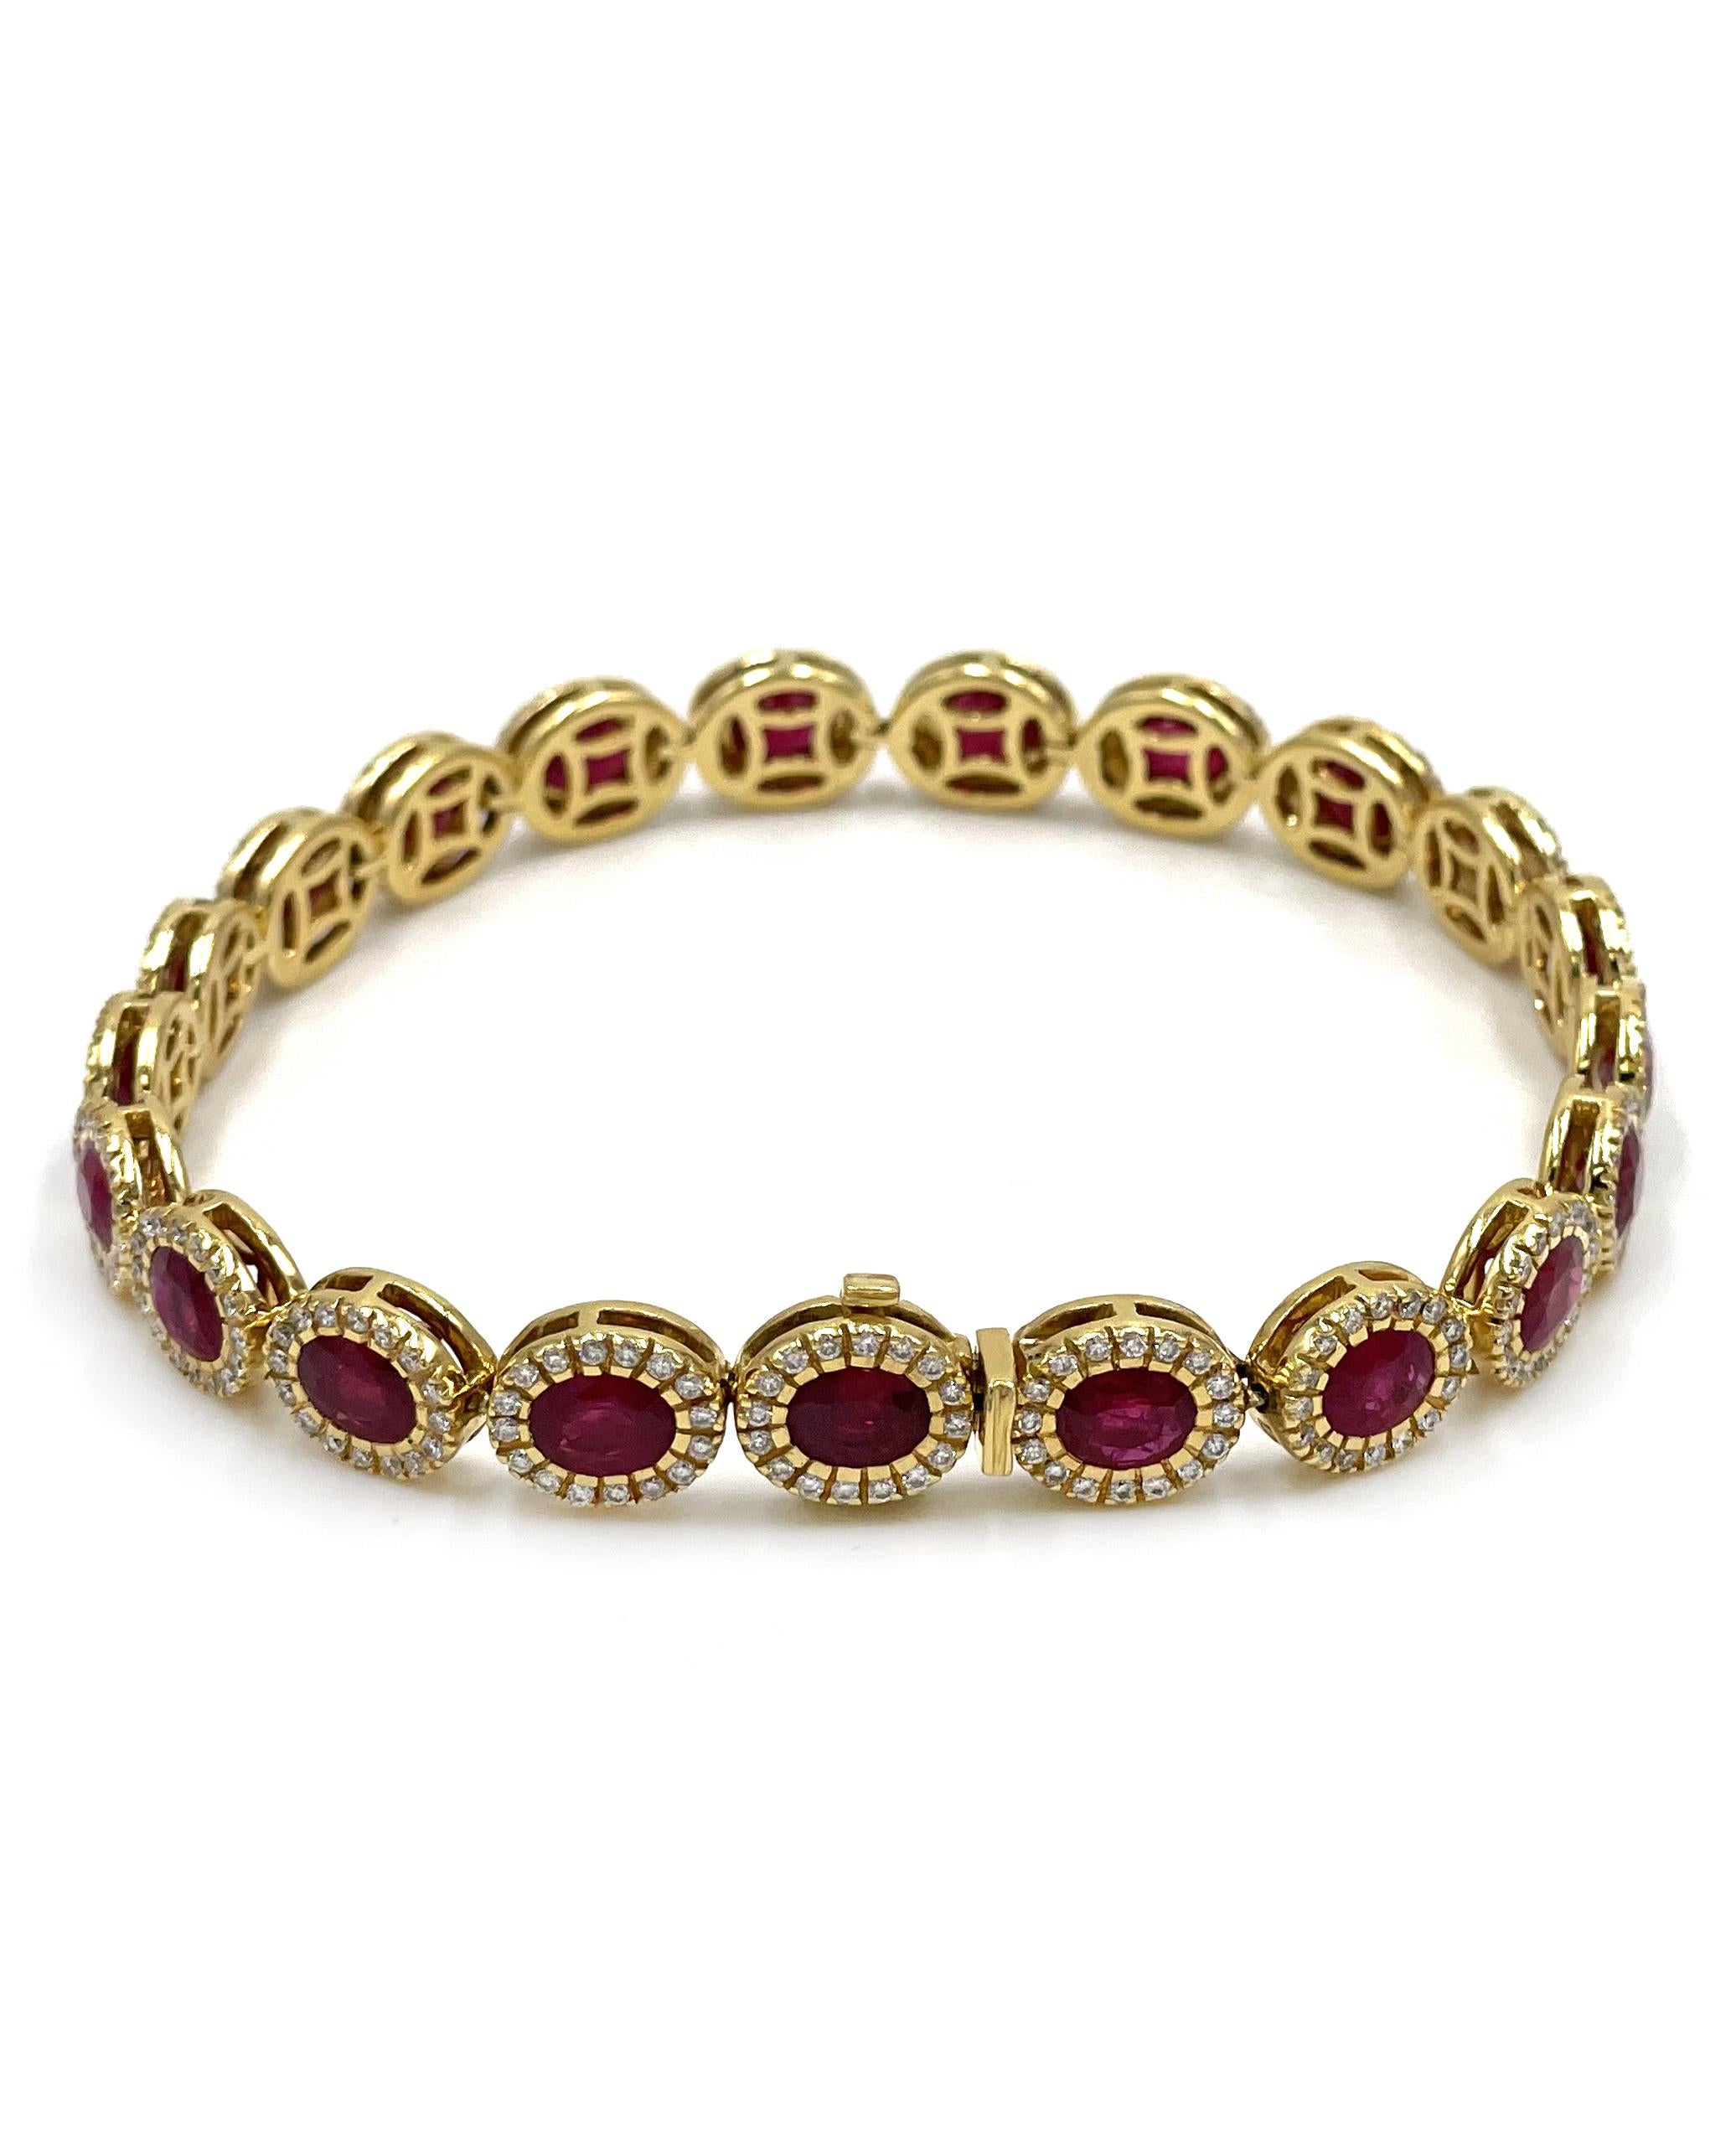 Bracelet en rubis et diamants serti en or jaune 18 carats.  Le bracelet comprend 21 rubis de taille ovale pesant 10.21 carats et 336 diamants ronds de taille brillante pesant un poids total de 1.36 carats.

* Les diamants sont en moyenne de couleur